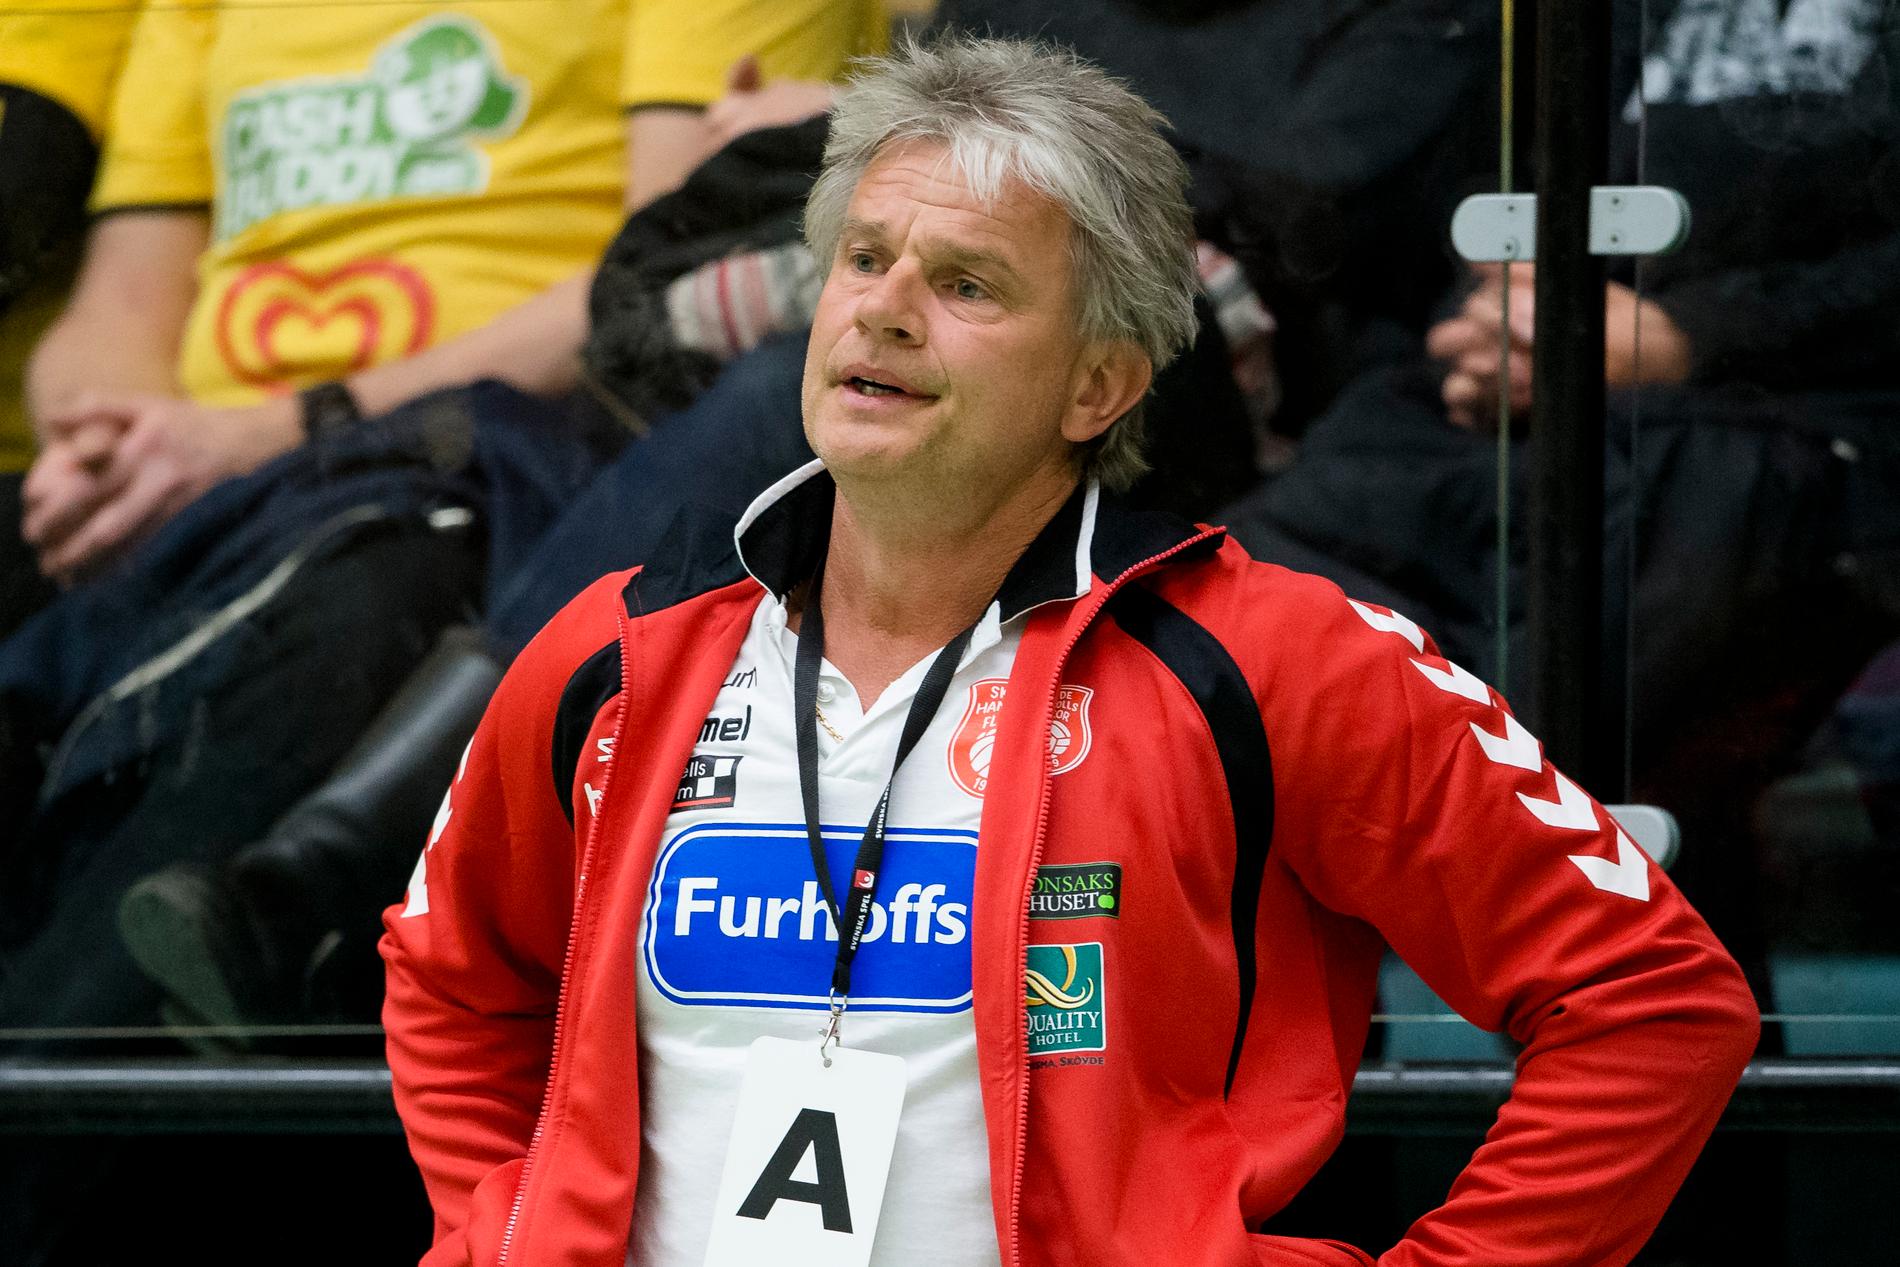 Magnus Frisk